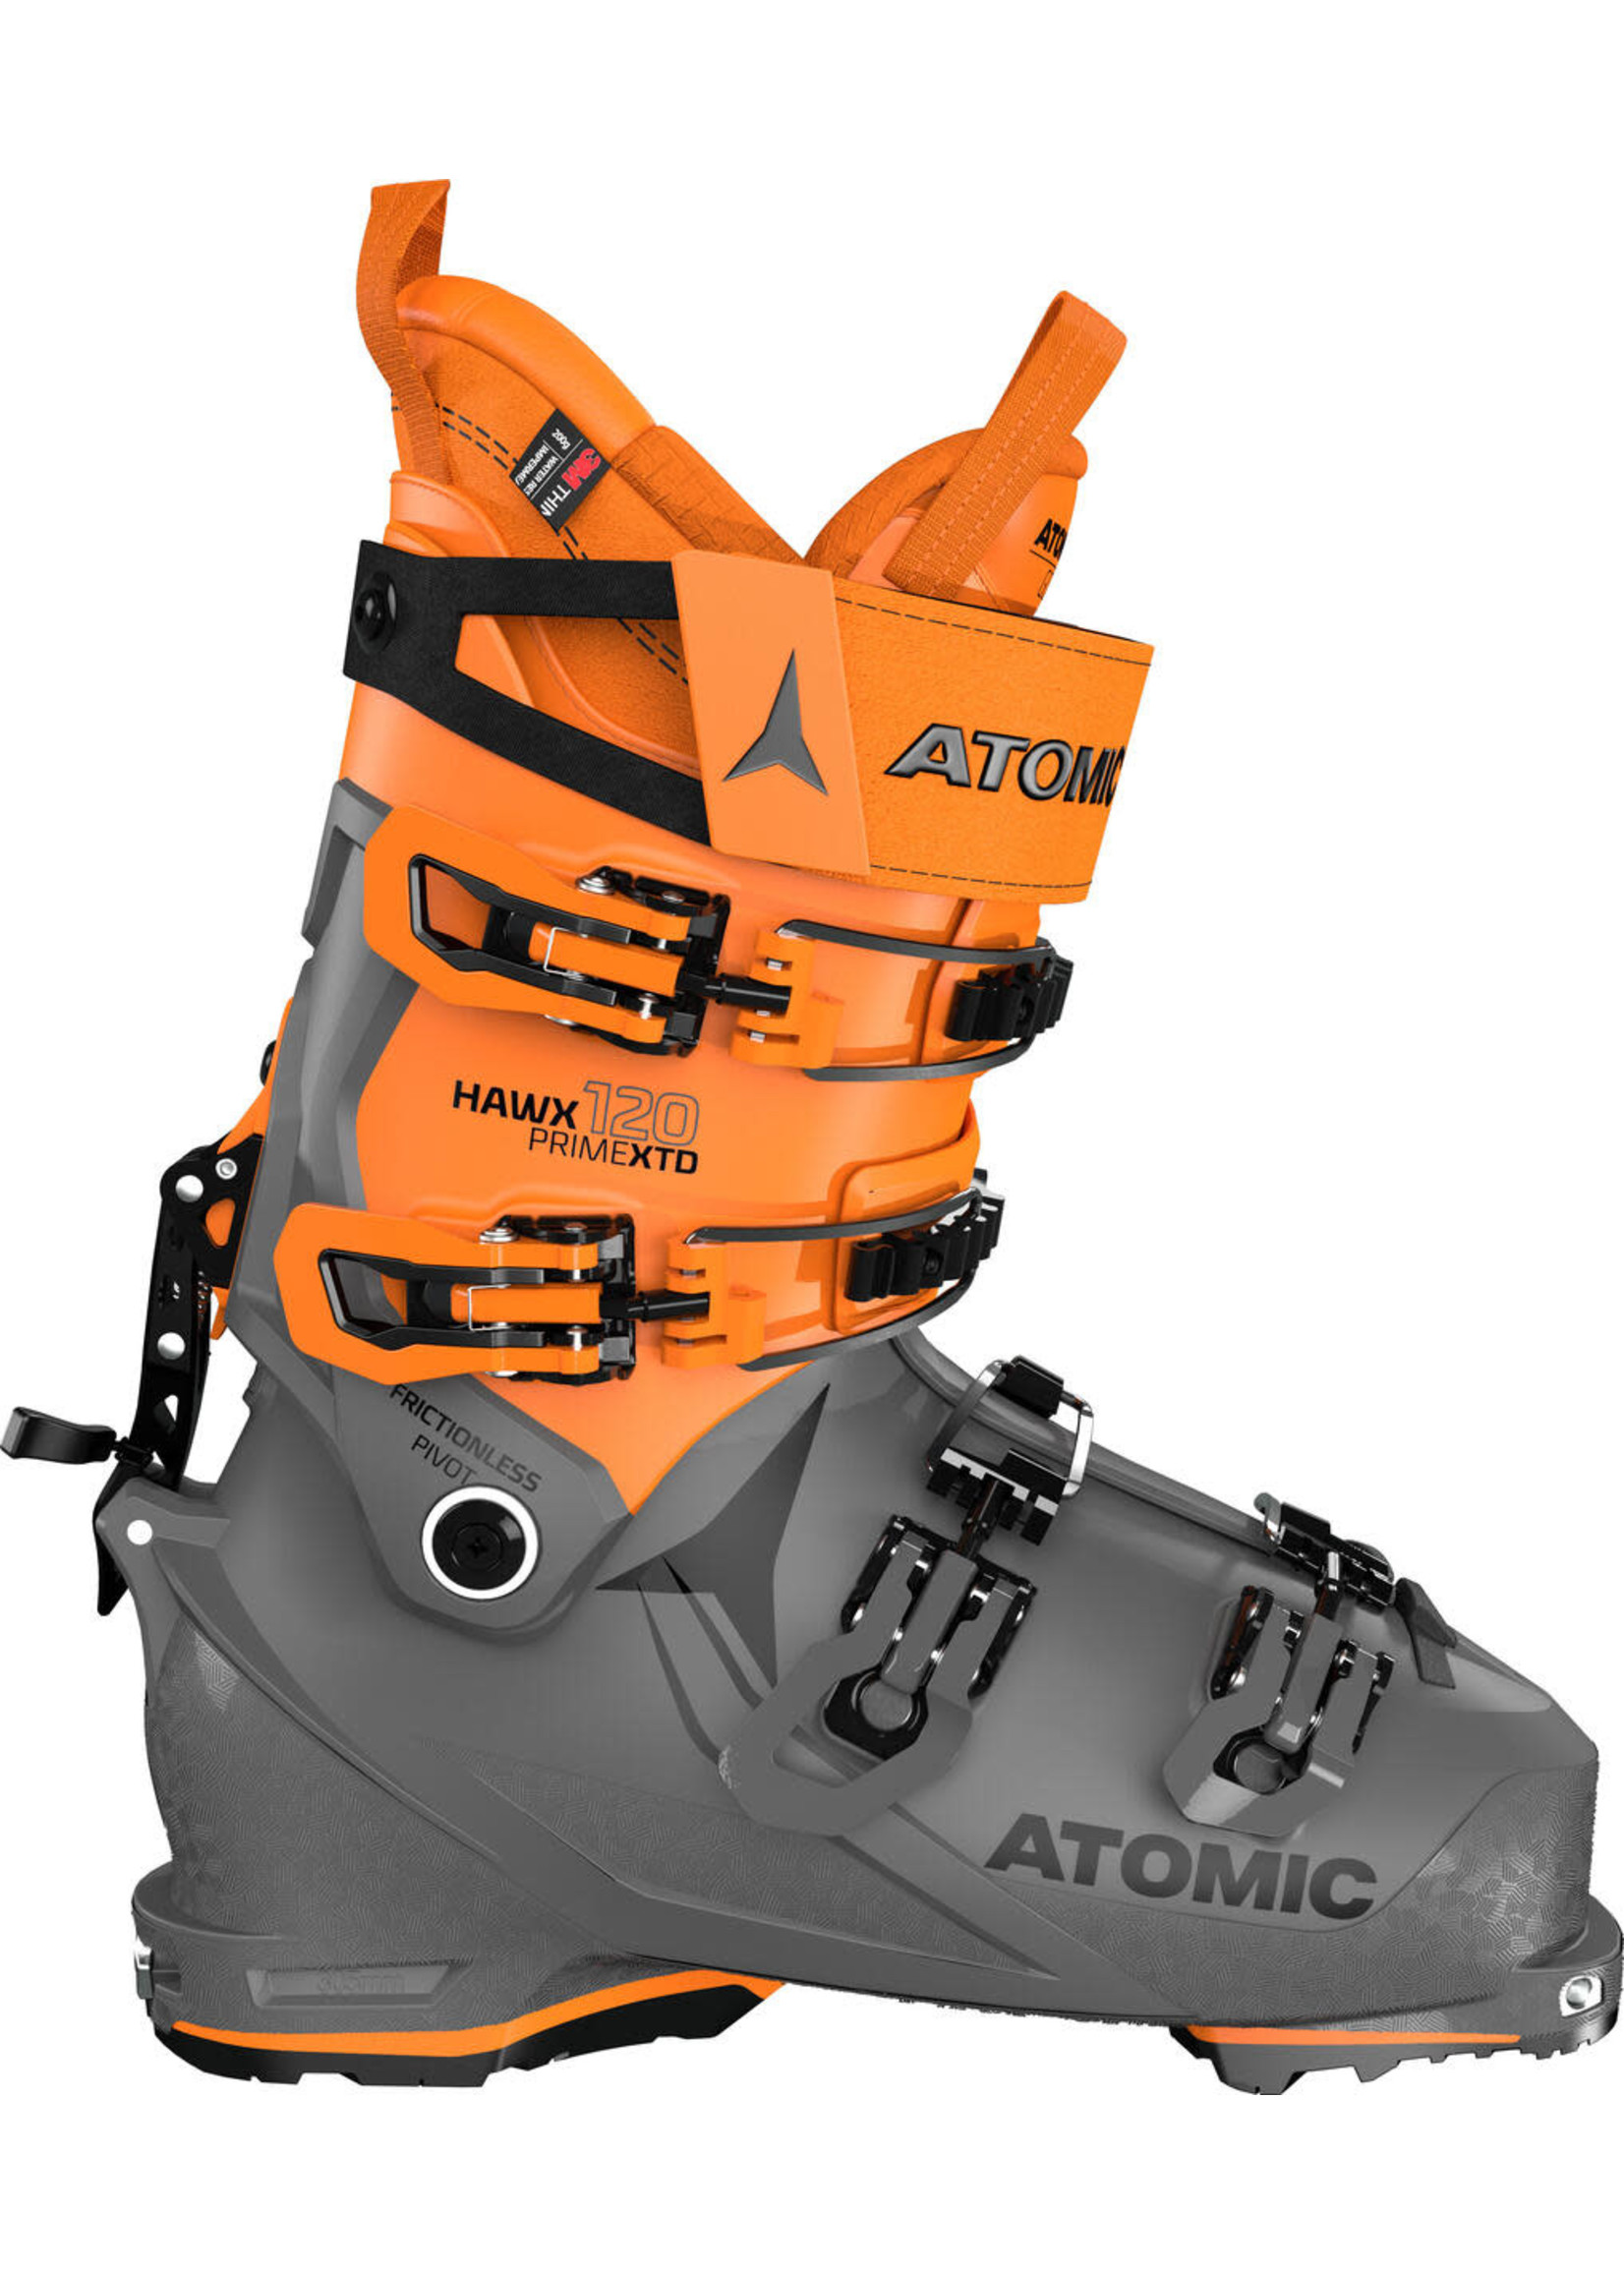 Atomic Ski Boot Touring Hawx  Prime XTD 120